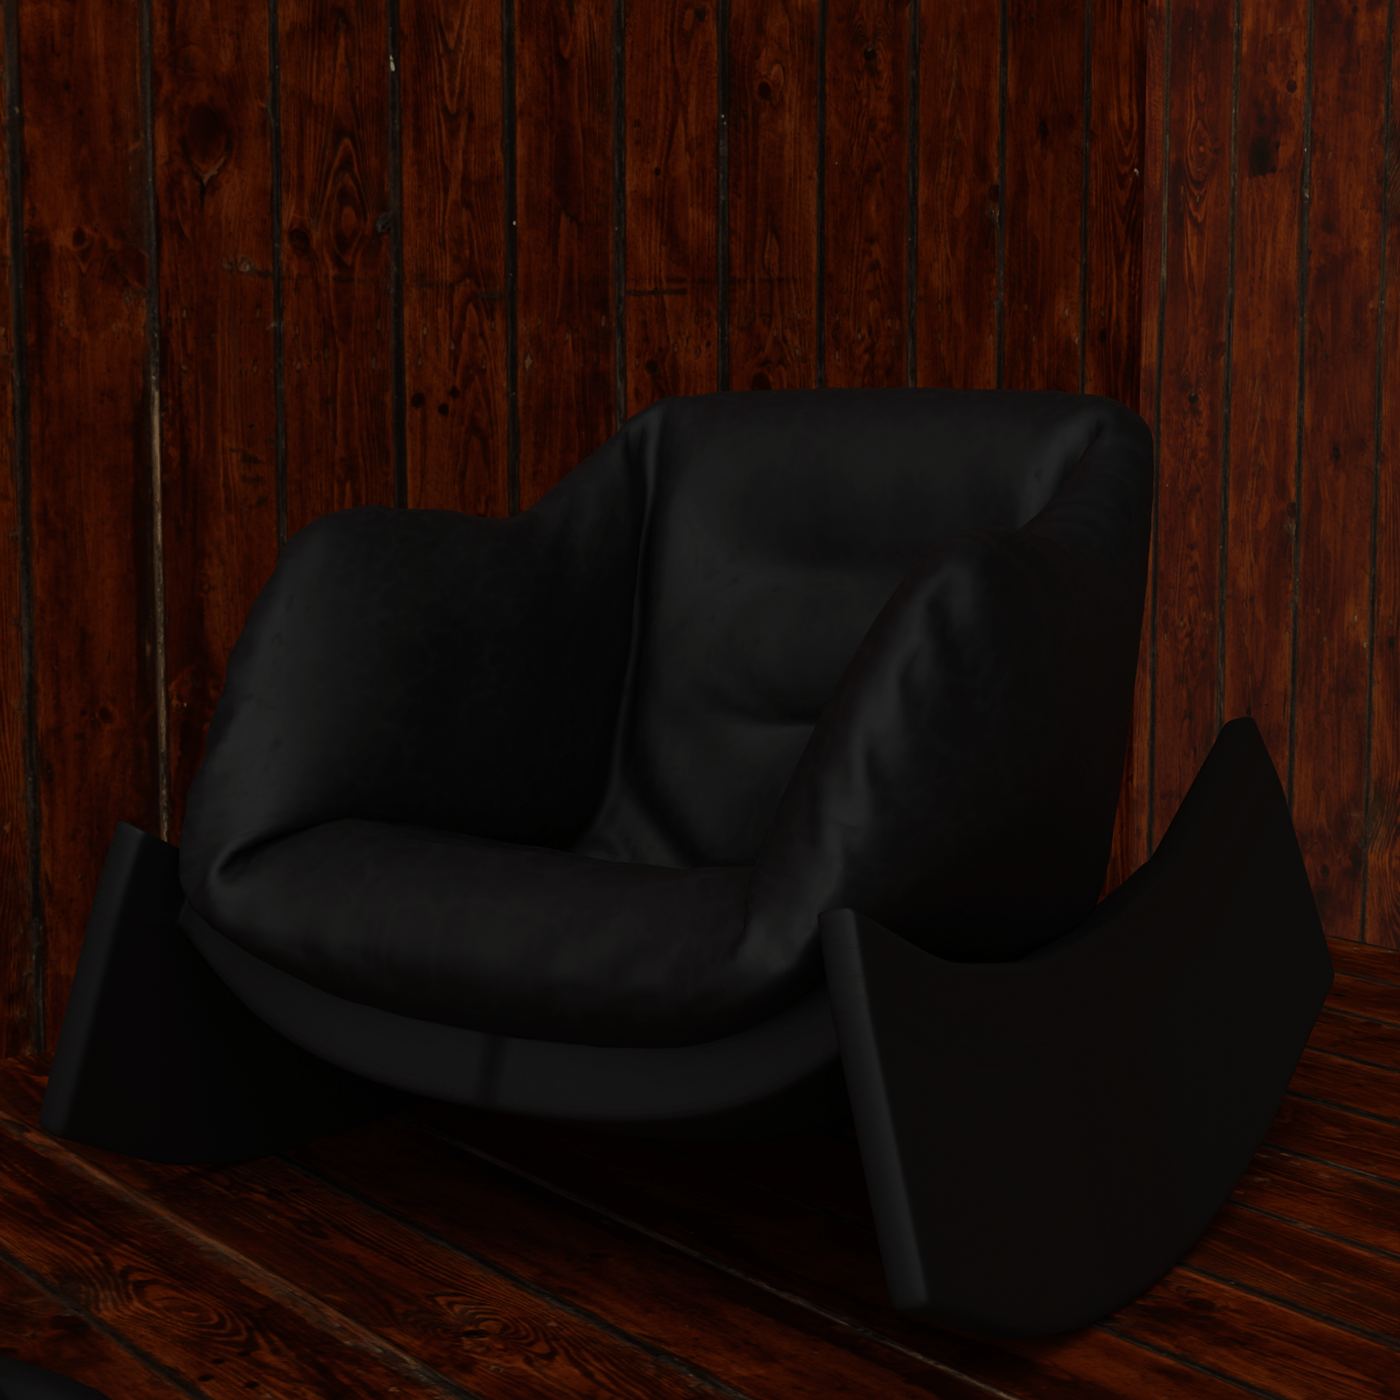 chair design Interior furniture design  Render blender3d 3d modeling interior design  leather wooden